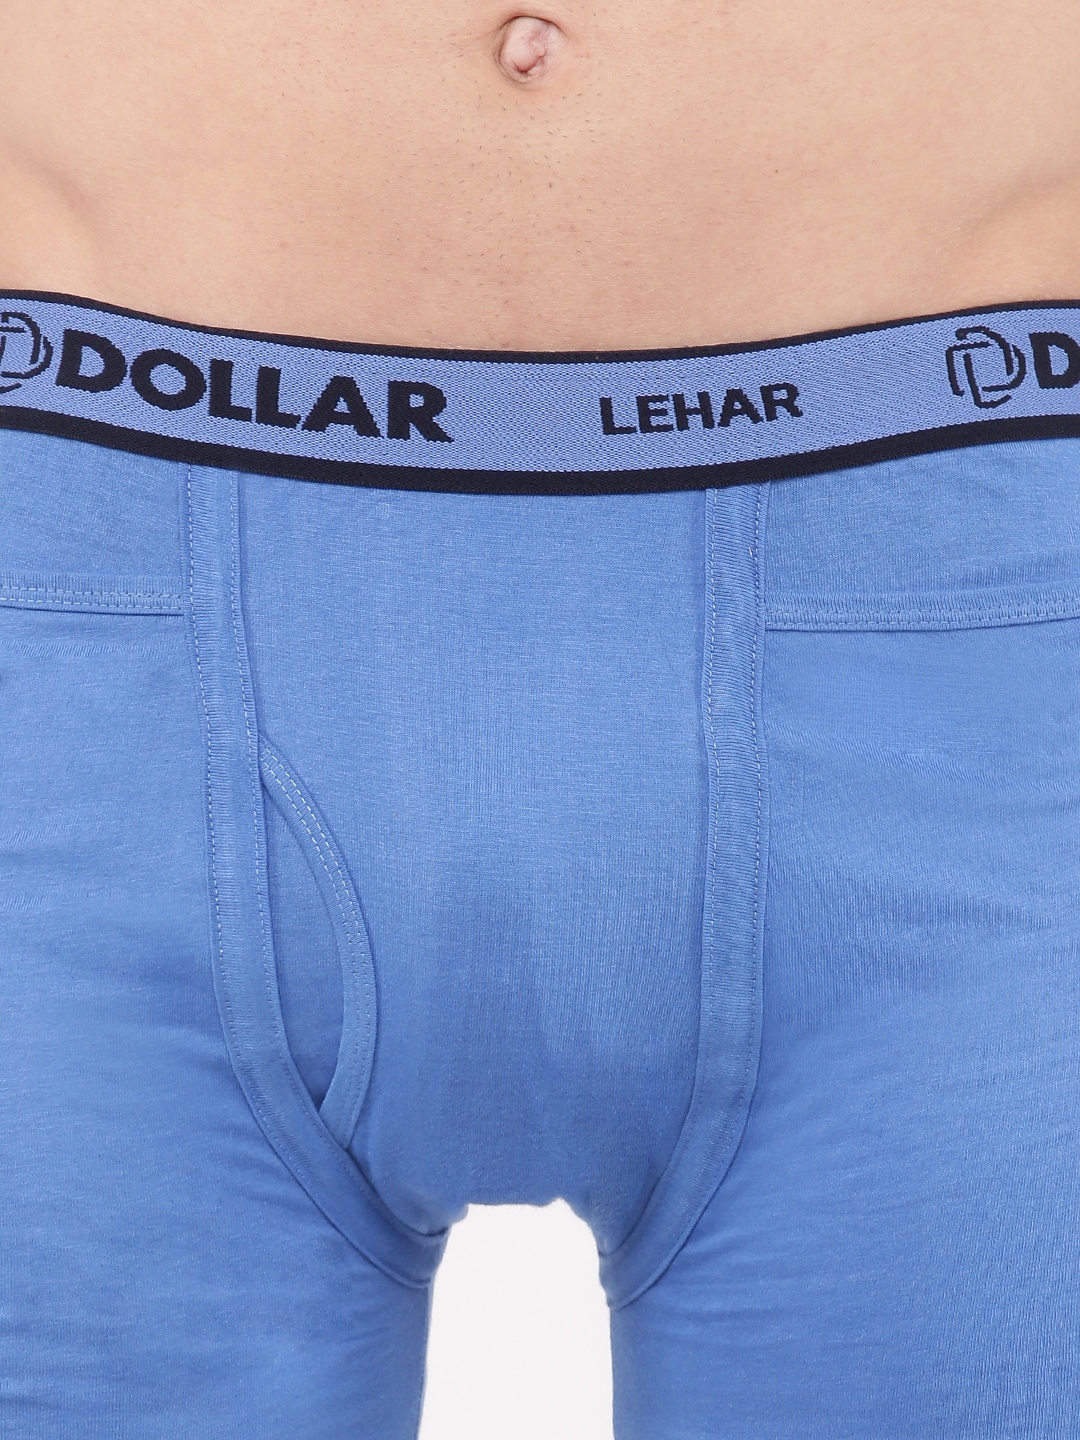 Dollar Lehar Mens Pack of 5 Fine Pocket Trunk – Dollarshoppe